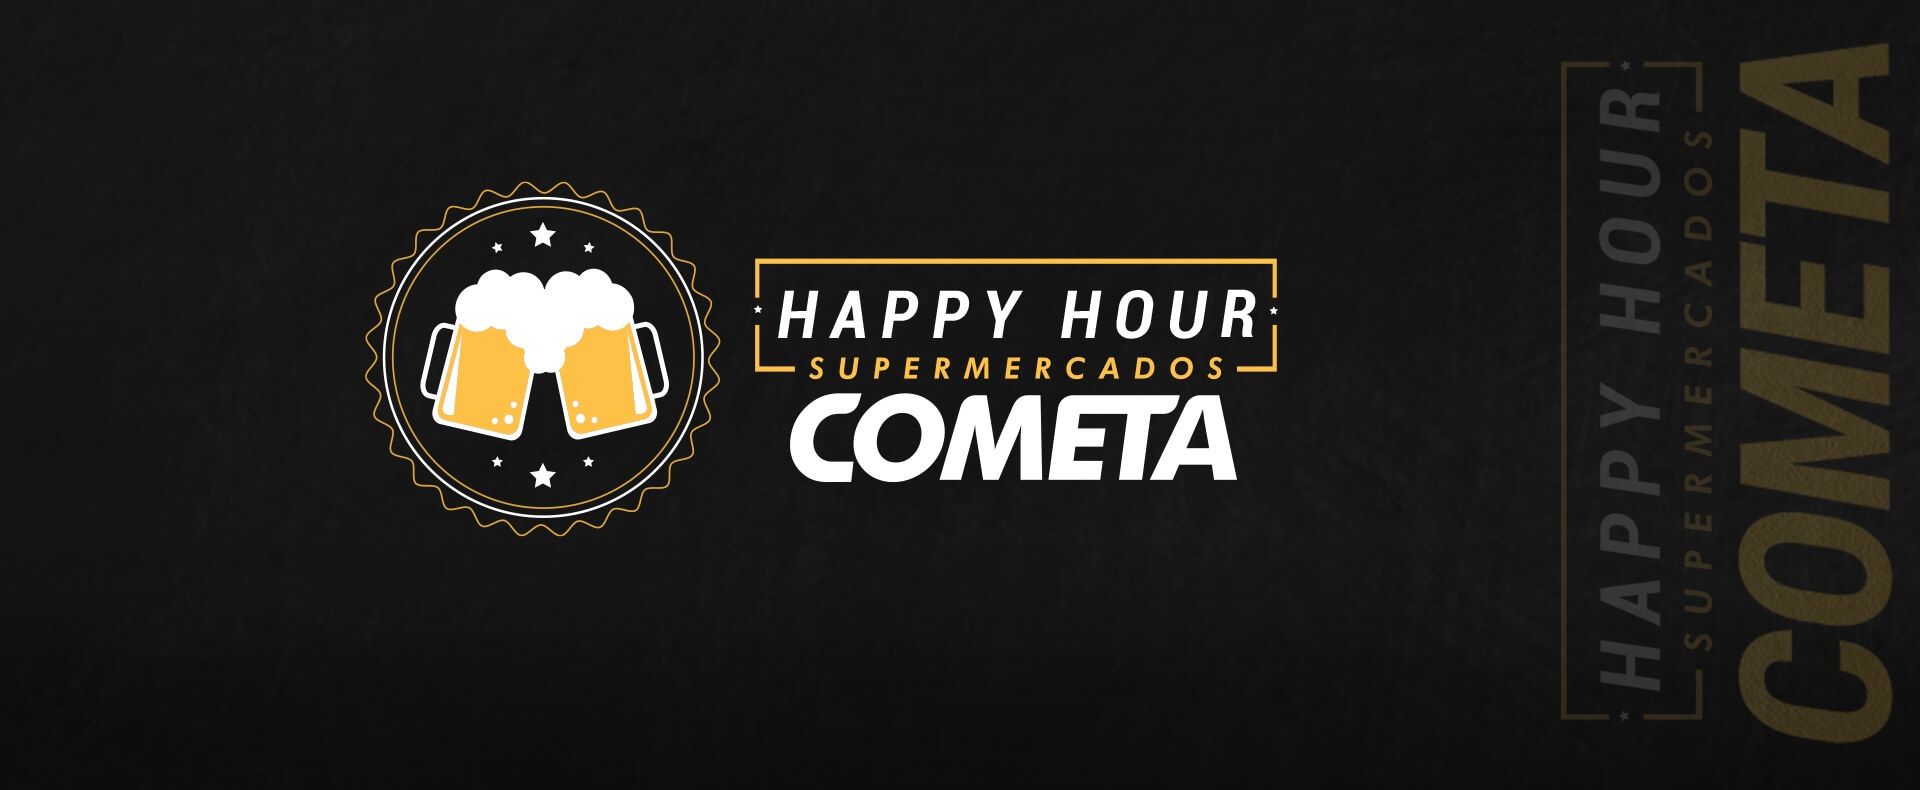 Happy Hour Cometa Supermercados